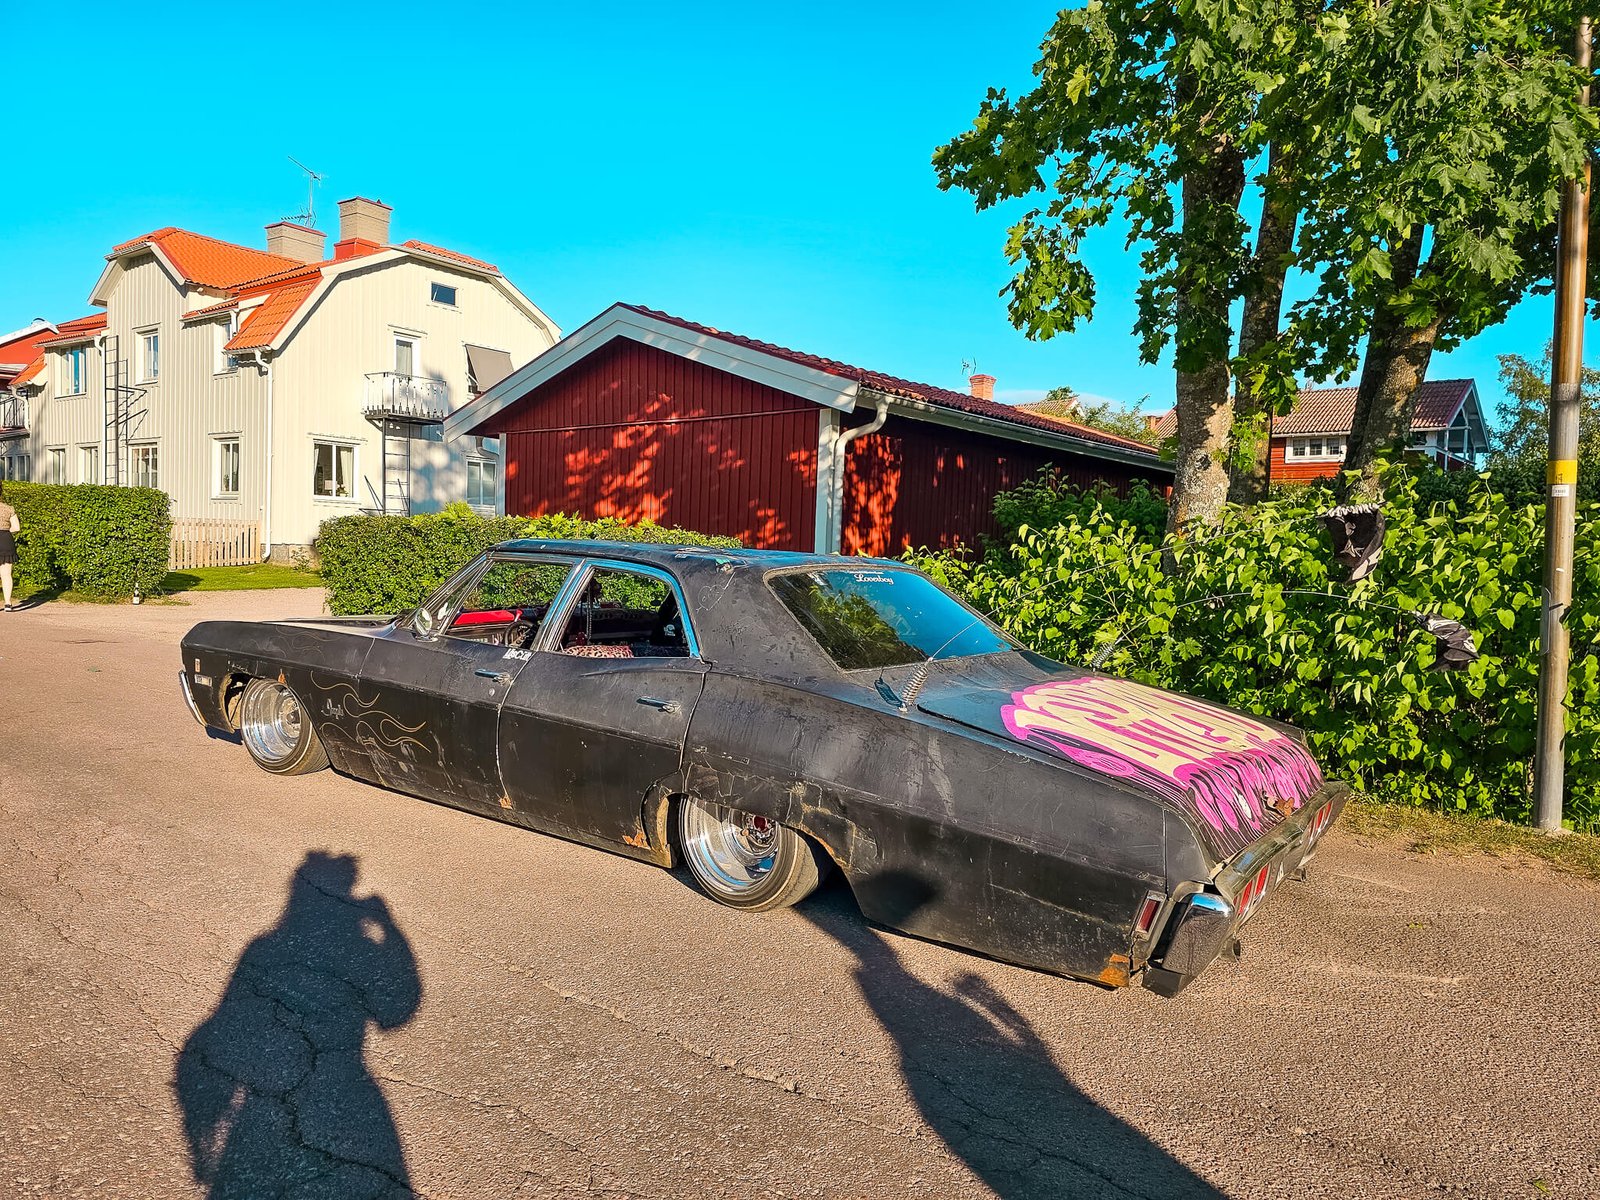 cars in Sweden during Midsummer